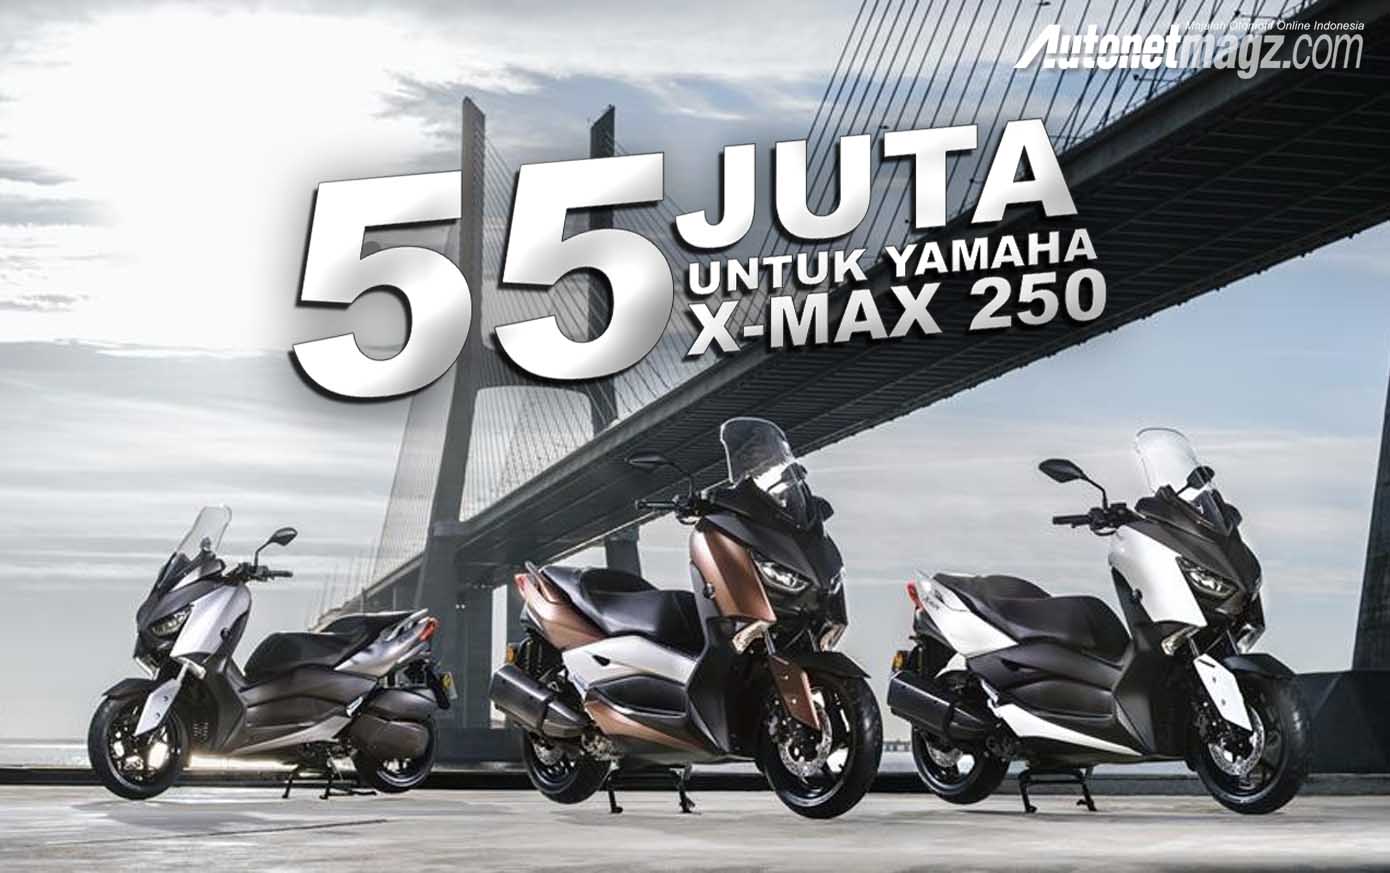 Berita, harga yamaha xmax 250 resmi diluncurkan: Yamaha Resmi Lepas X-Max 250 Dengan Banderol 55 Juta, Tertarik?